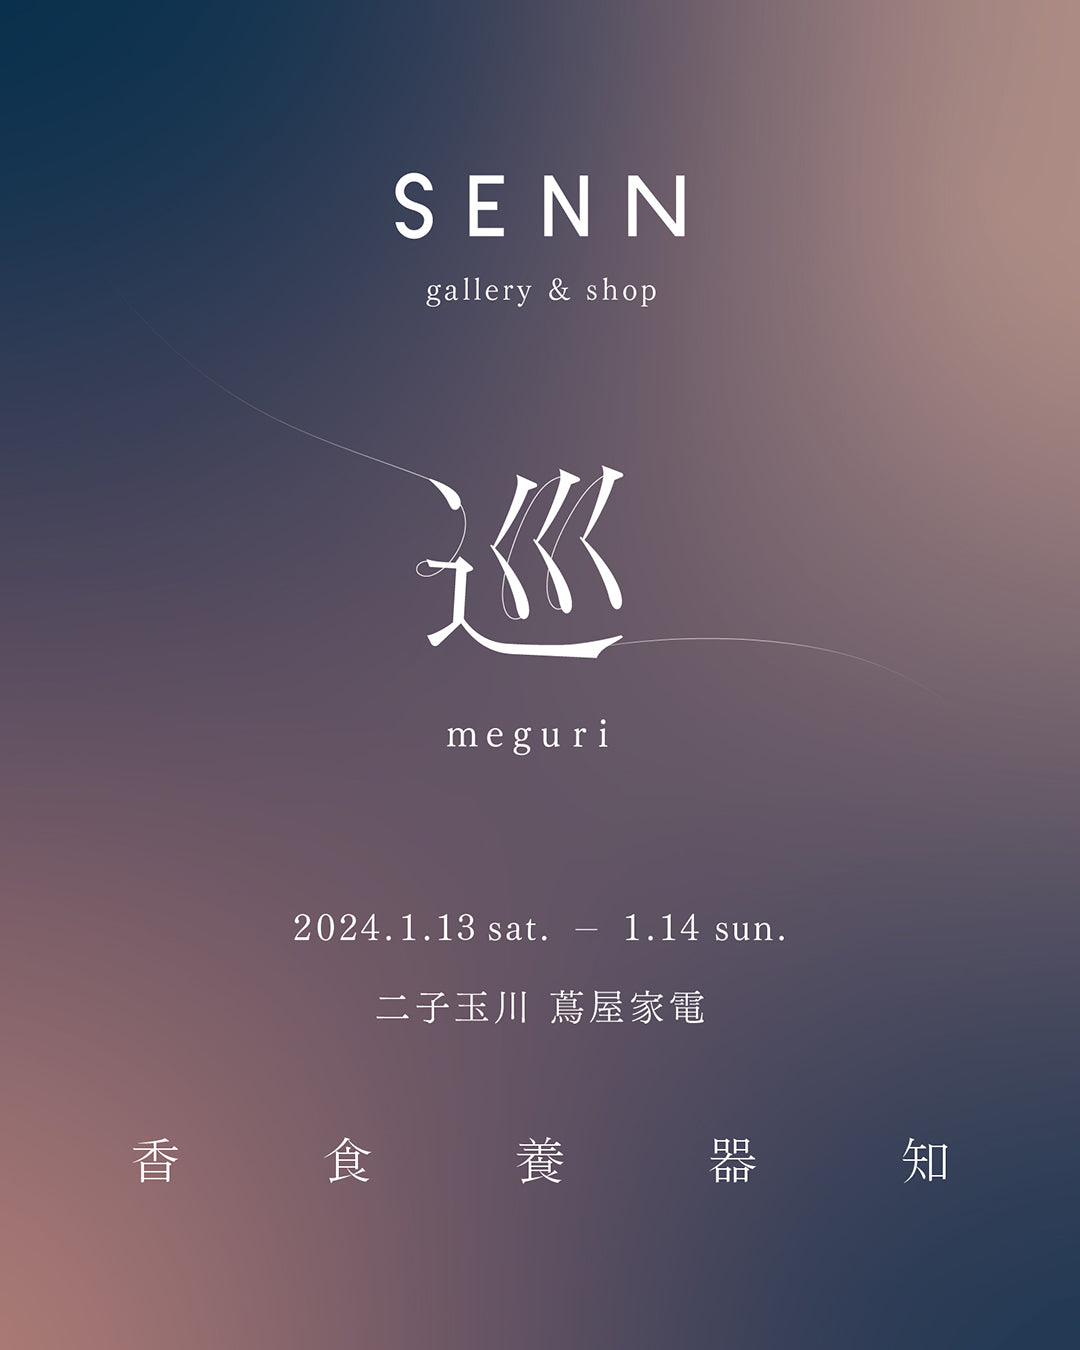 SENN gallery & shop  - 巡 meguri -